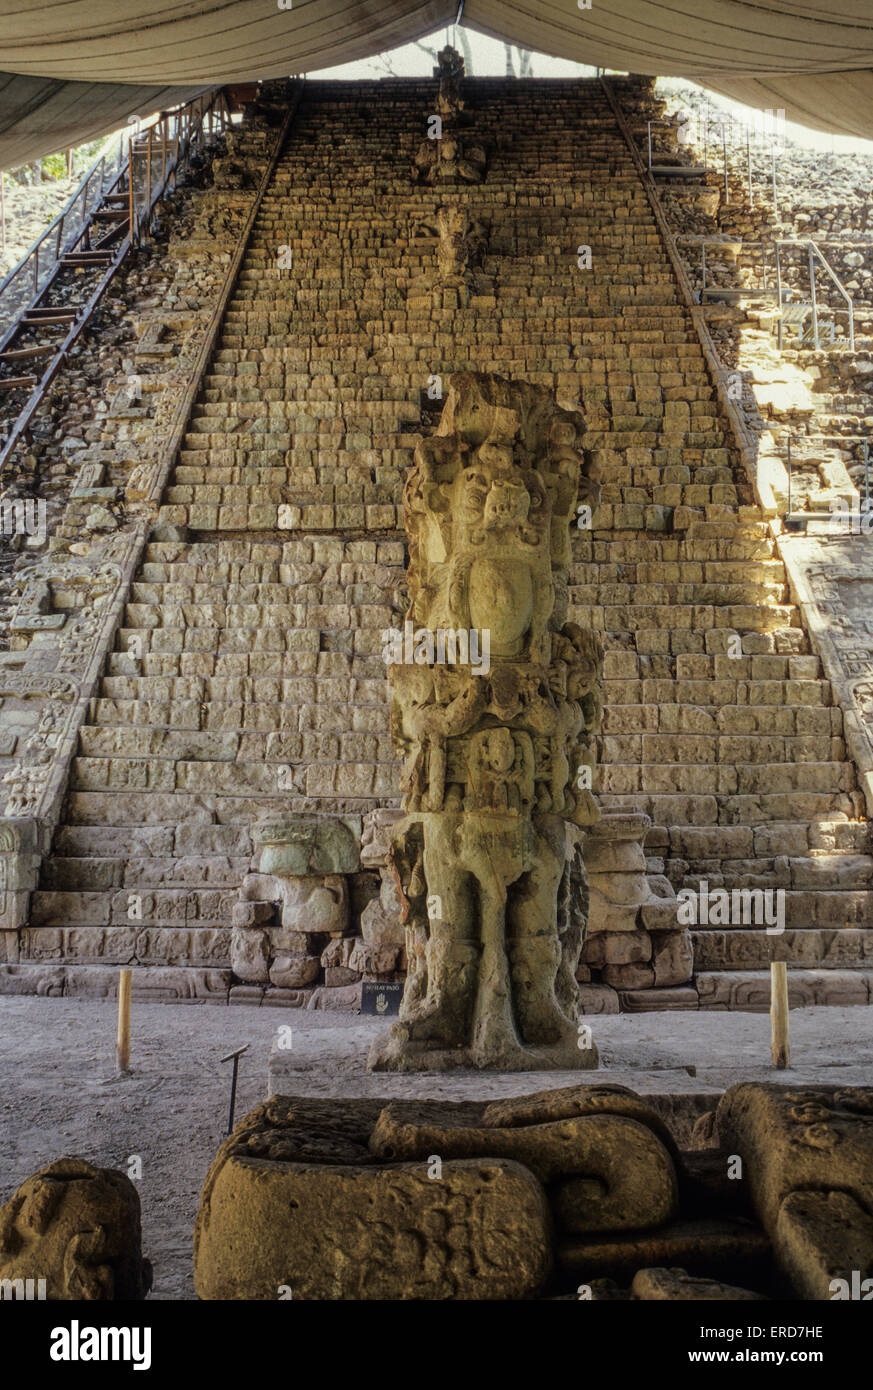 Las ruinas de Copán, Honduras. Stella M delante de la Escalinata Jeroglífica, Regla Humo Concha. Foto de stock